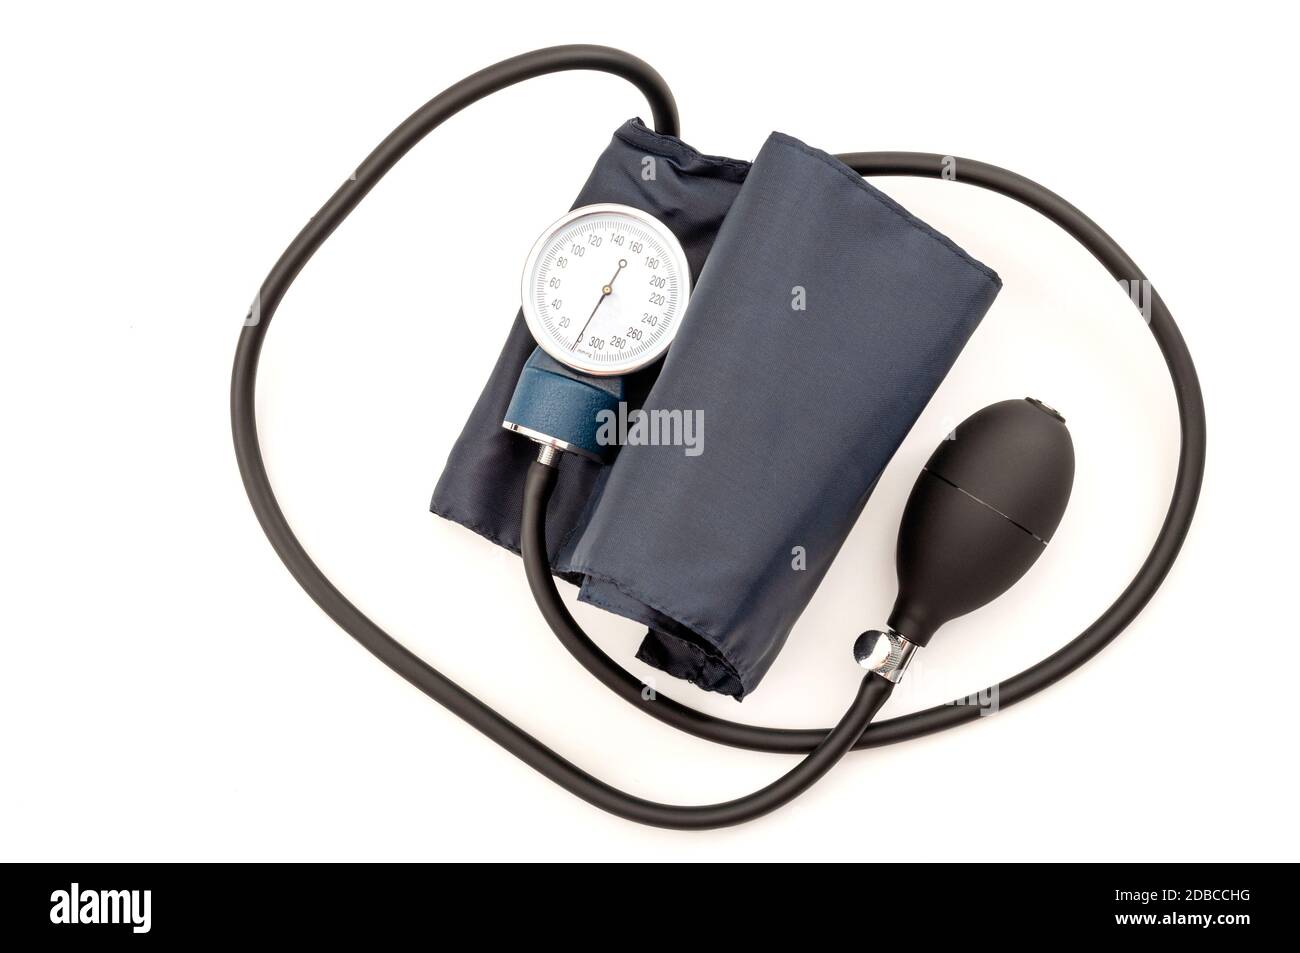 Esame cardiologo e idea concettuale dell'ipertensione con il monitor della pressione sanguigna dispositivo o sfigmomanometro utilizzato per misurare l'isolo della pressione cardiovascolare Foto Stock